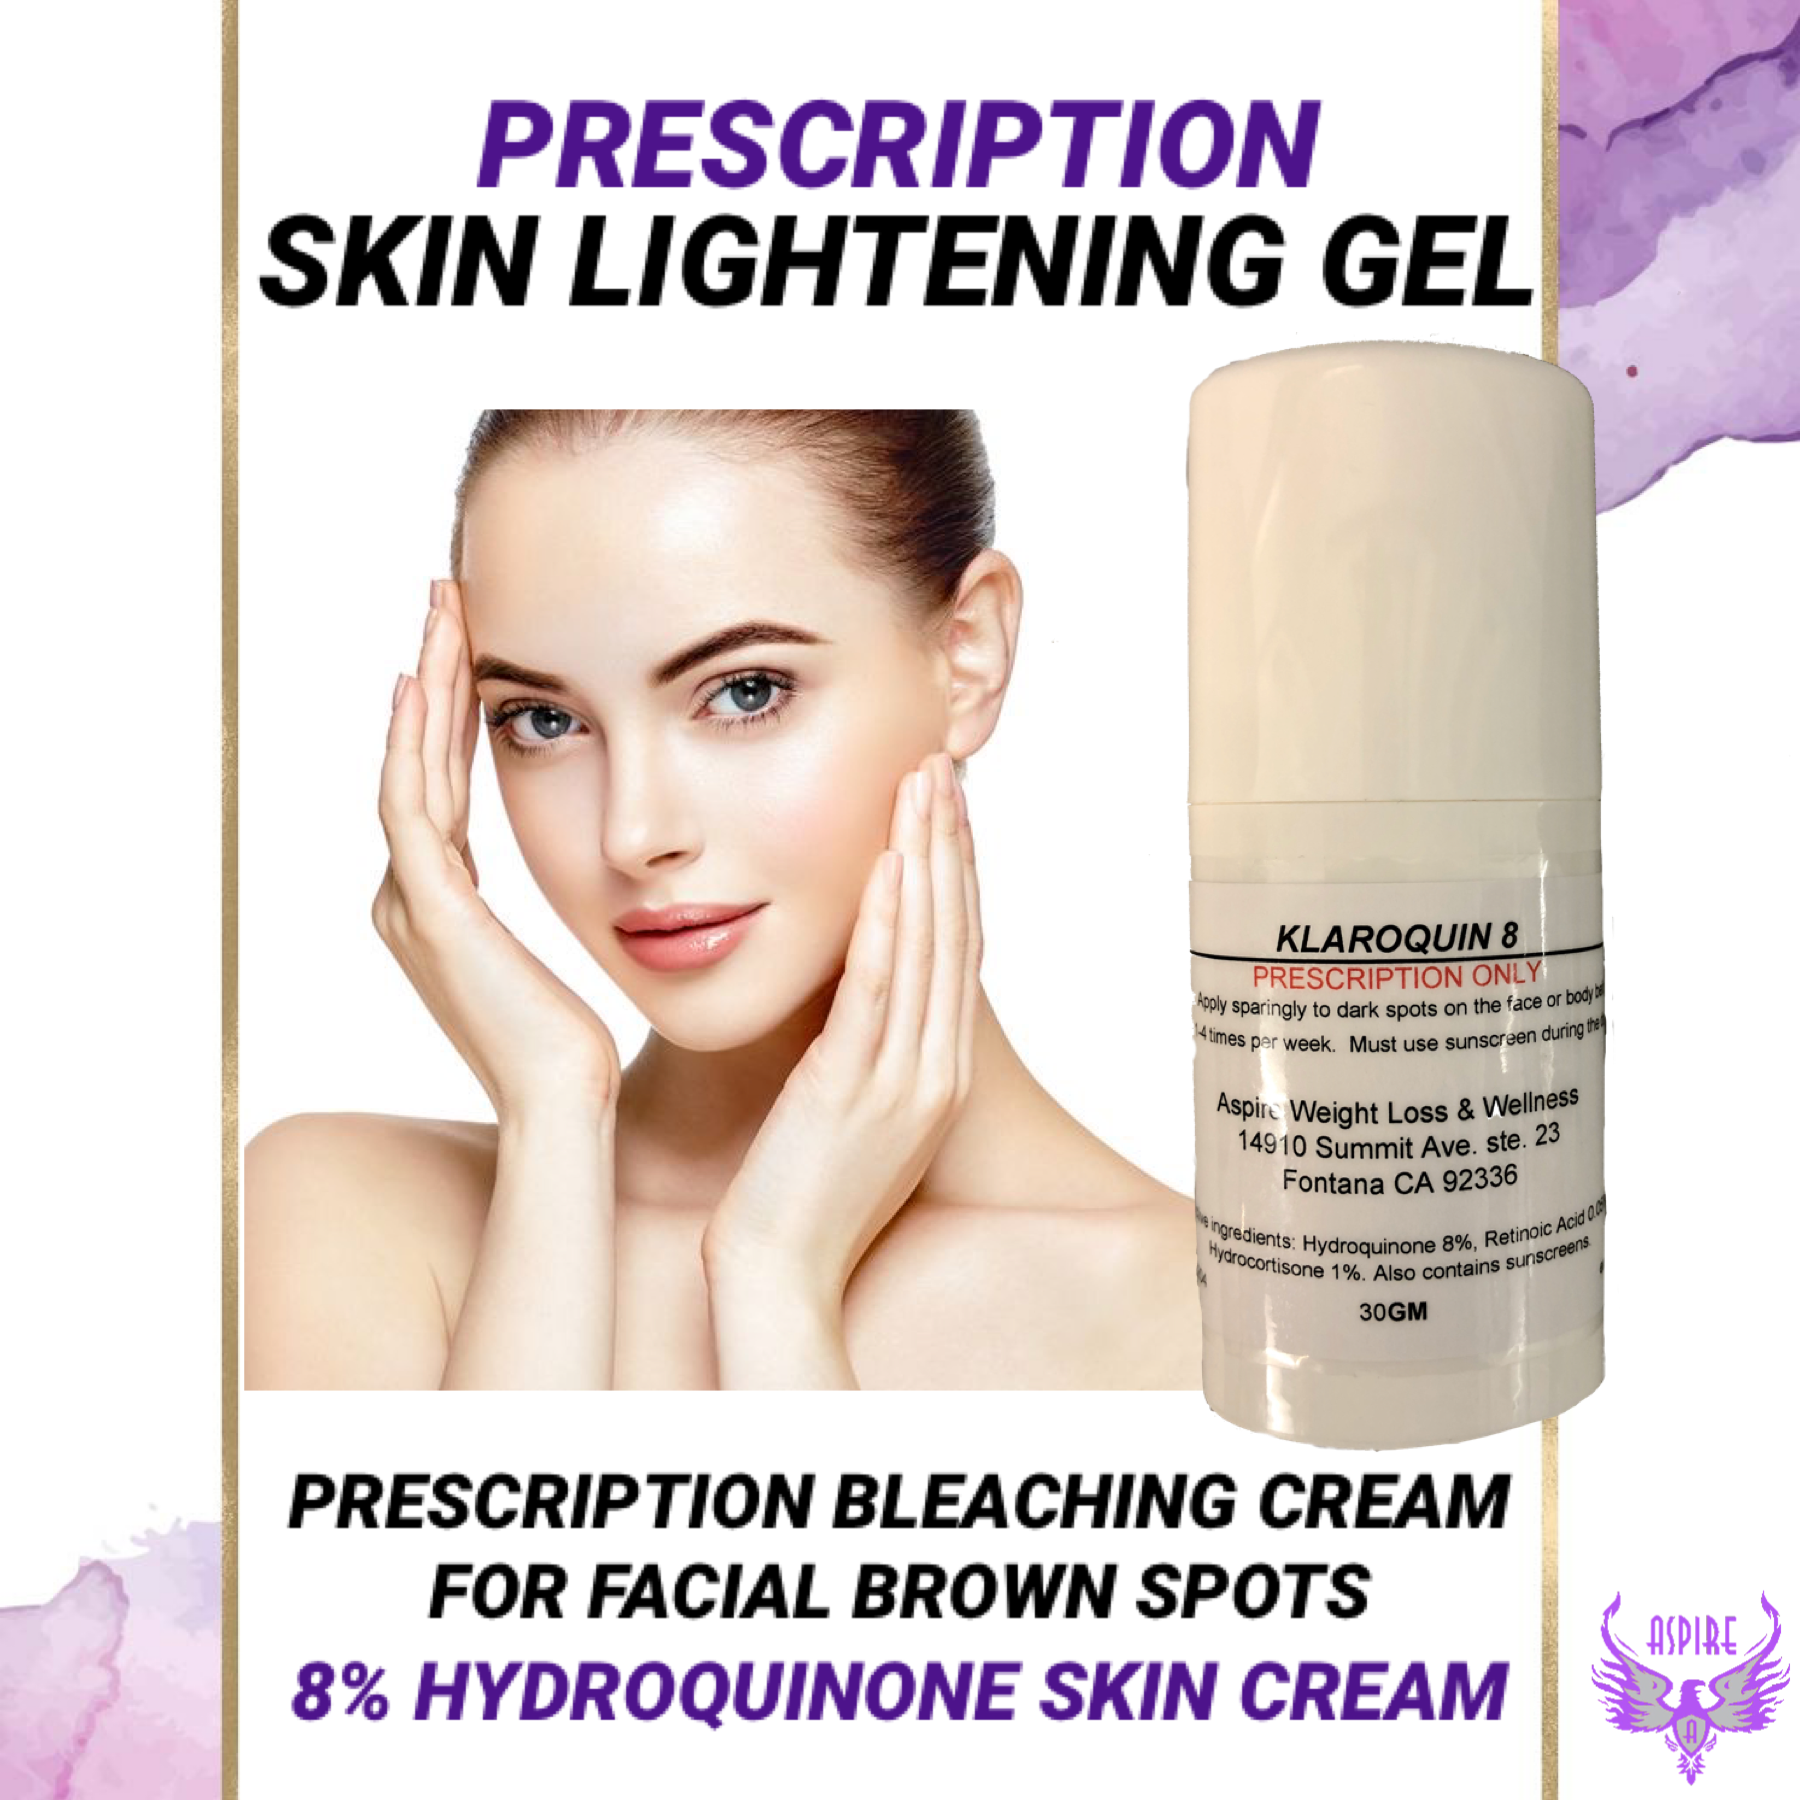 skin bleaching cream product